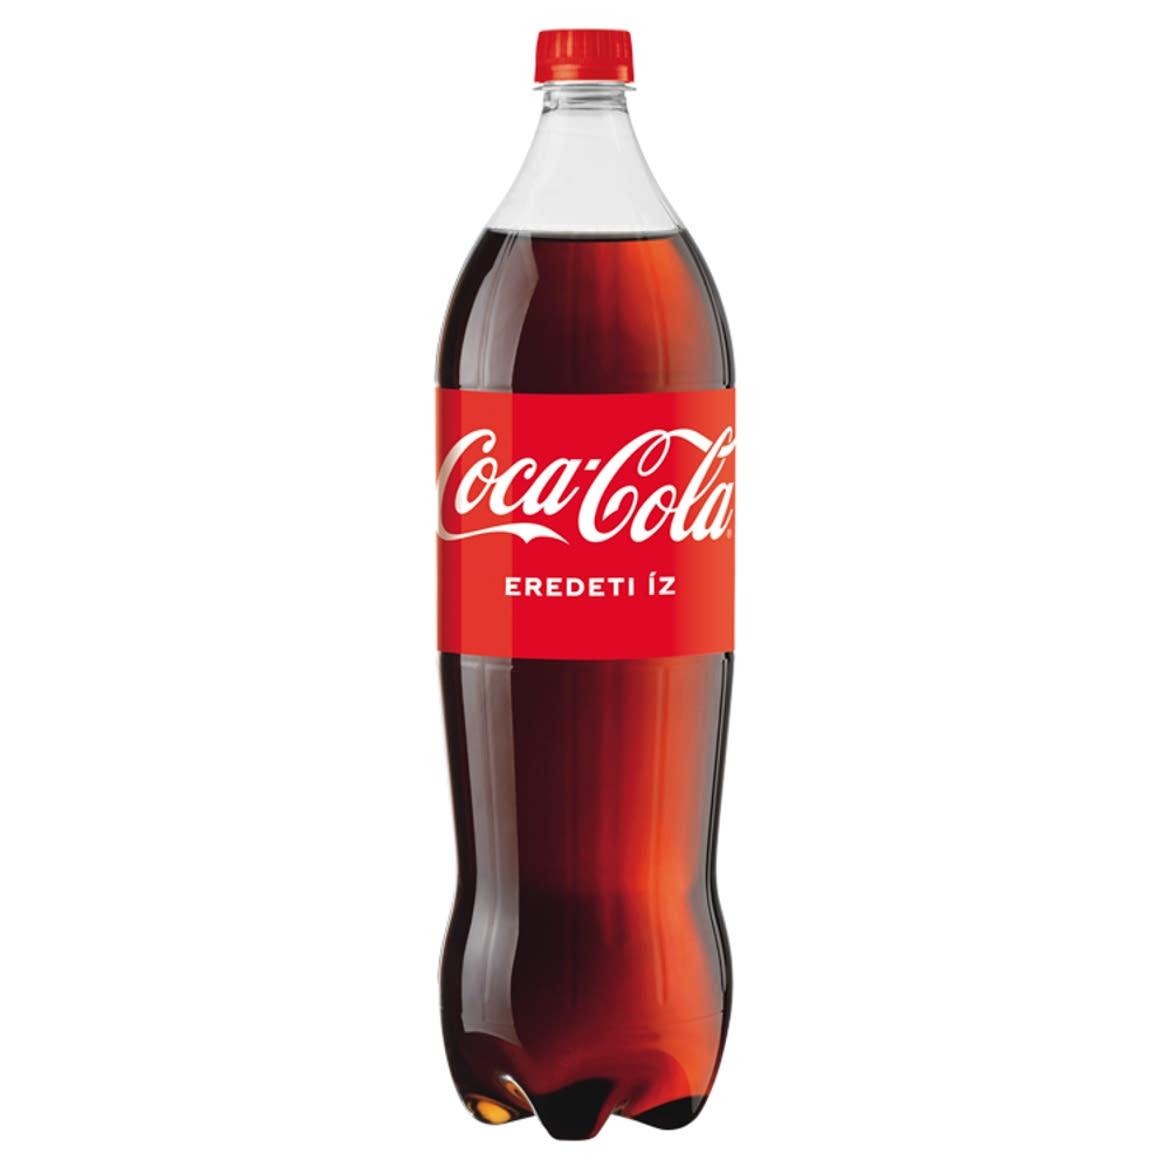 Coca-Cola colaízű szénsavas üdítőital